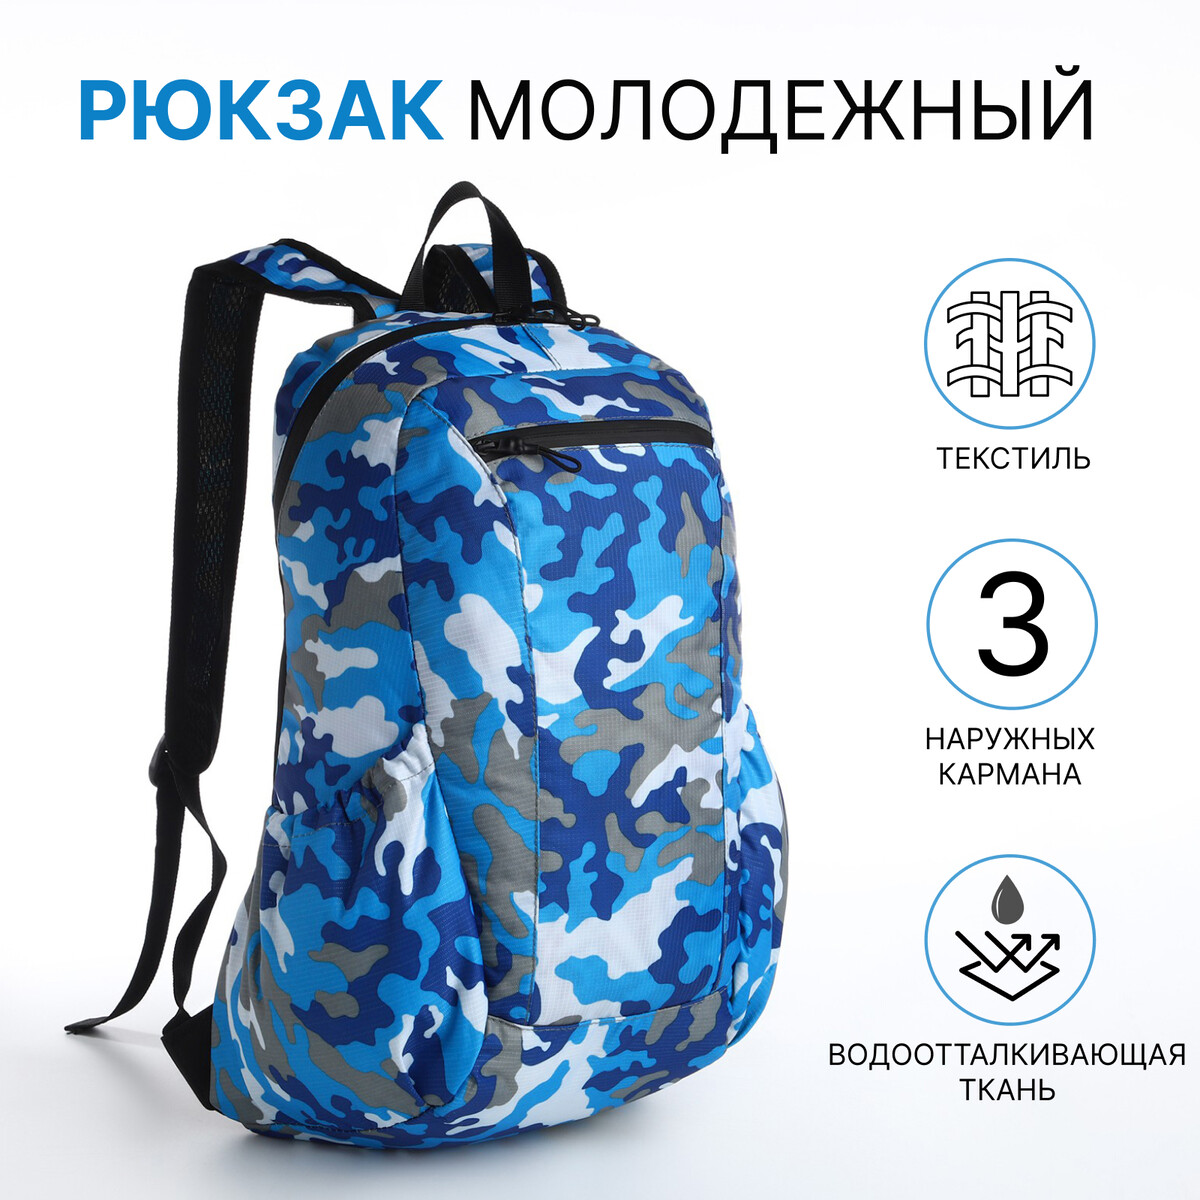 Рюкзак молодежный, водонепроницаемый на молнии, 3 кармана, цвет голубой/синий рюкзак молодежный на молнии из текстиля 4 кармана белый синий